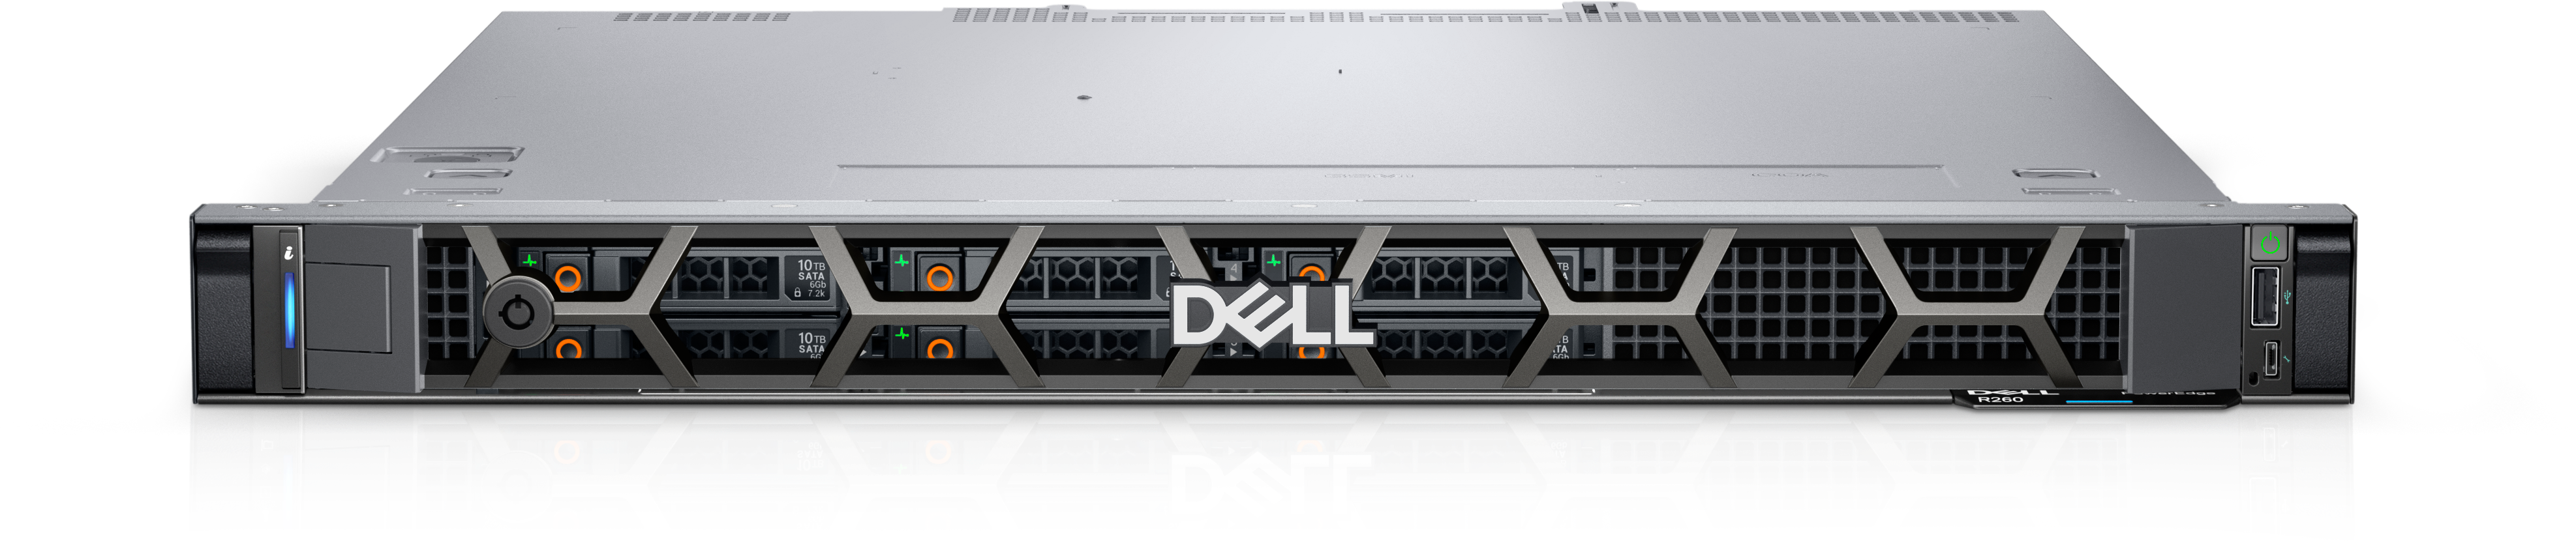 PowerEdge R260ラックサーバー | Dell 日本